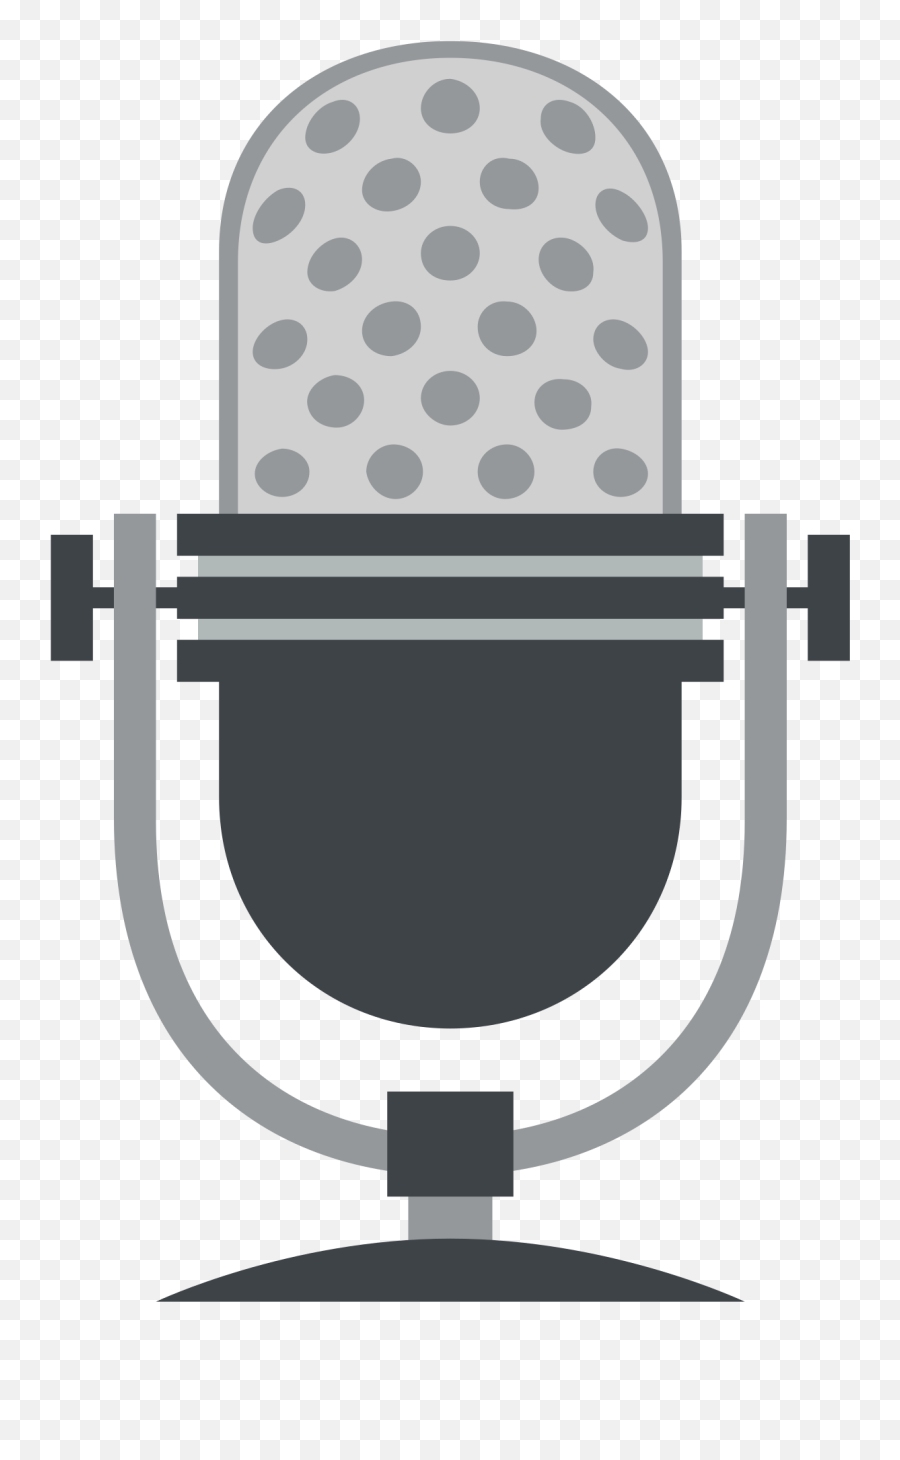 Microphone Clip Art Black And White - Microphone Emoji Transparent Background,Microphone Emoji